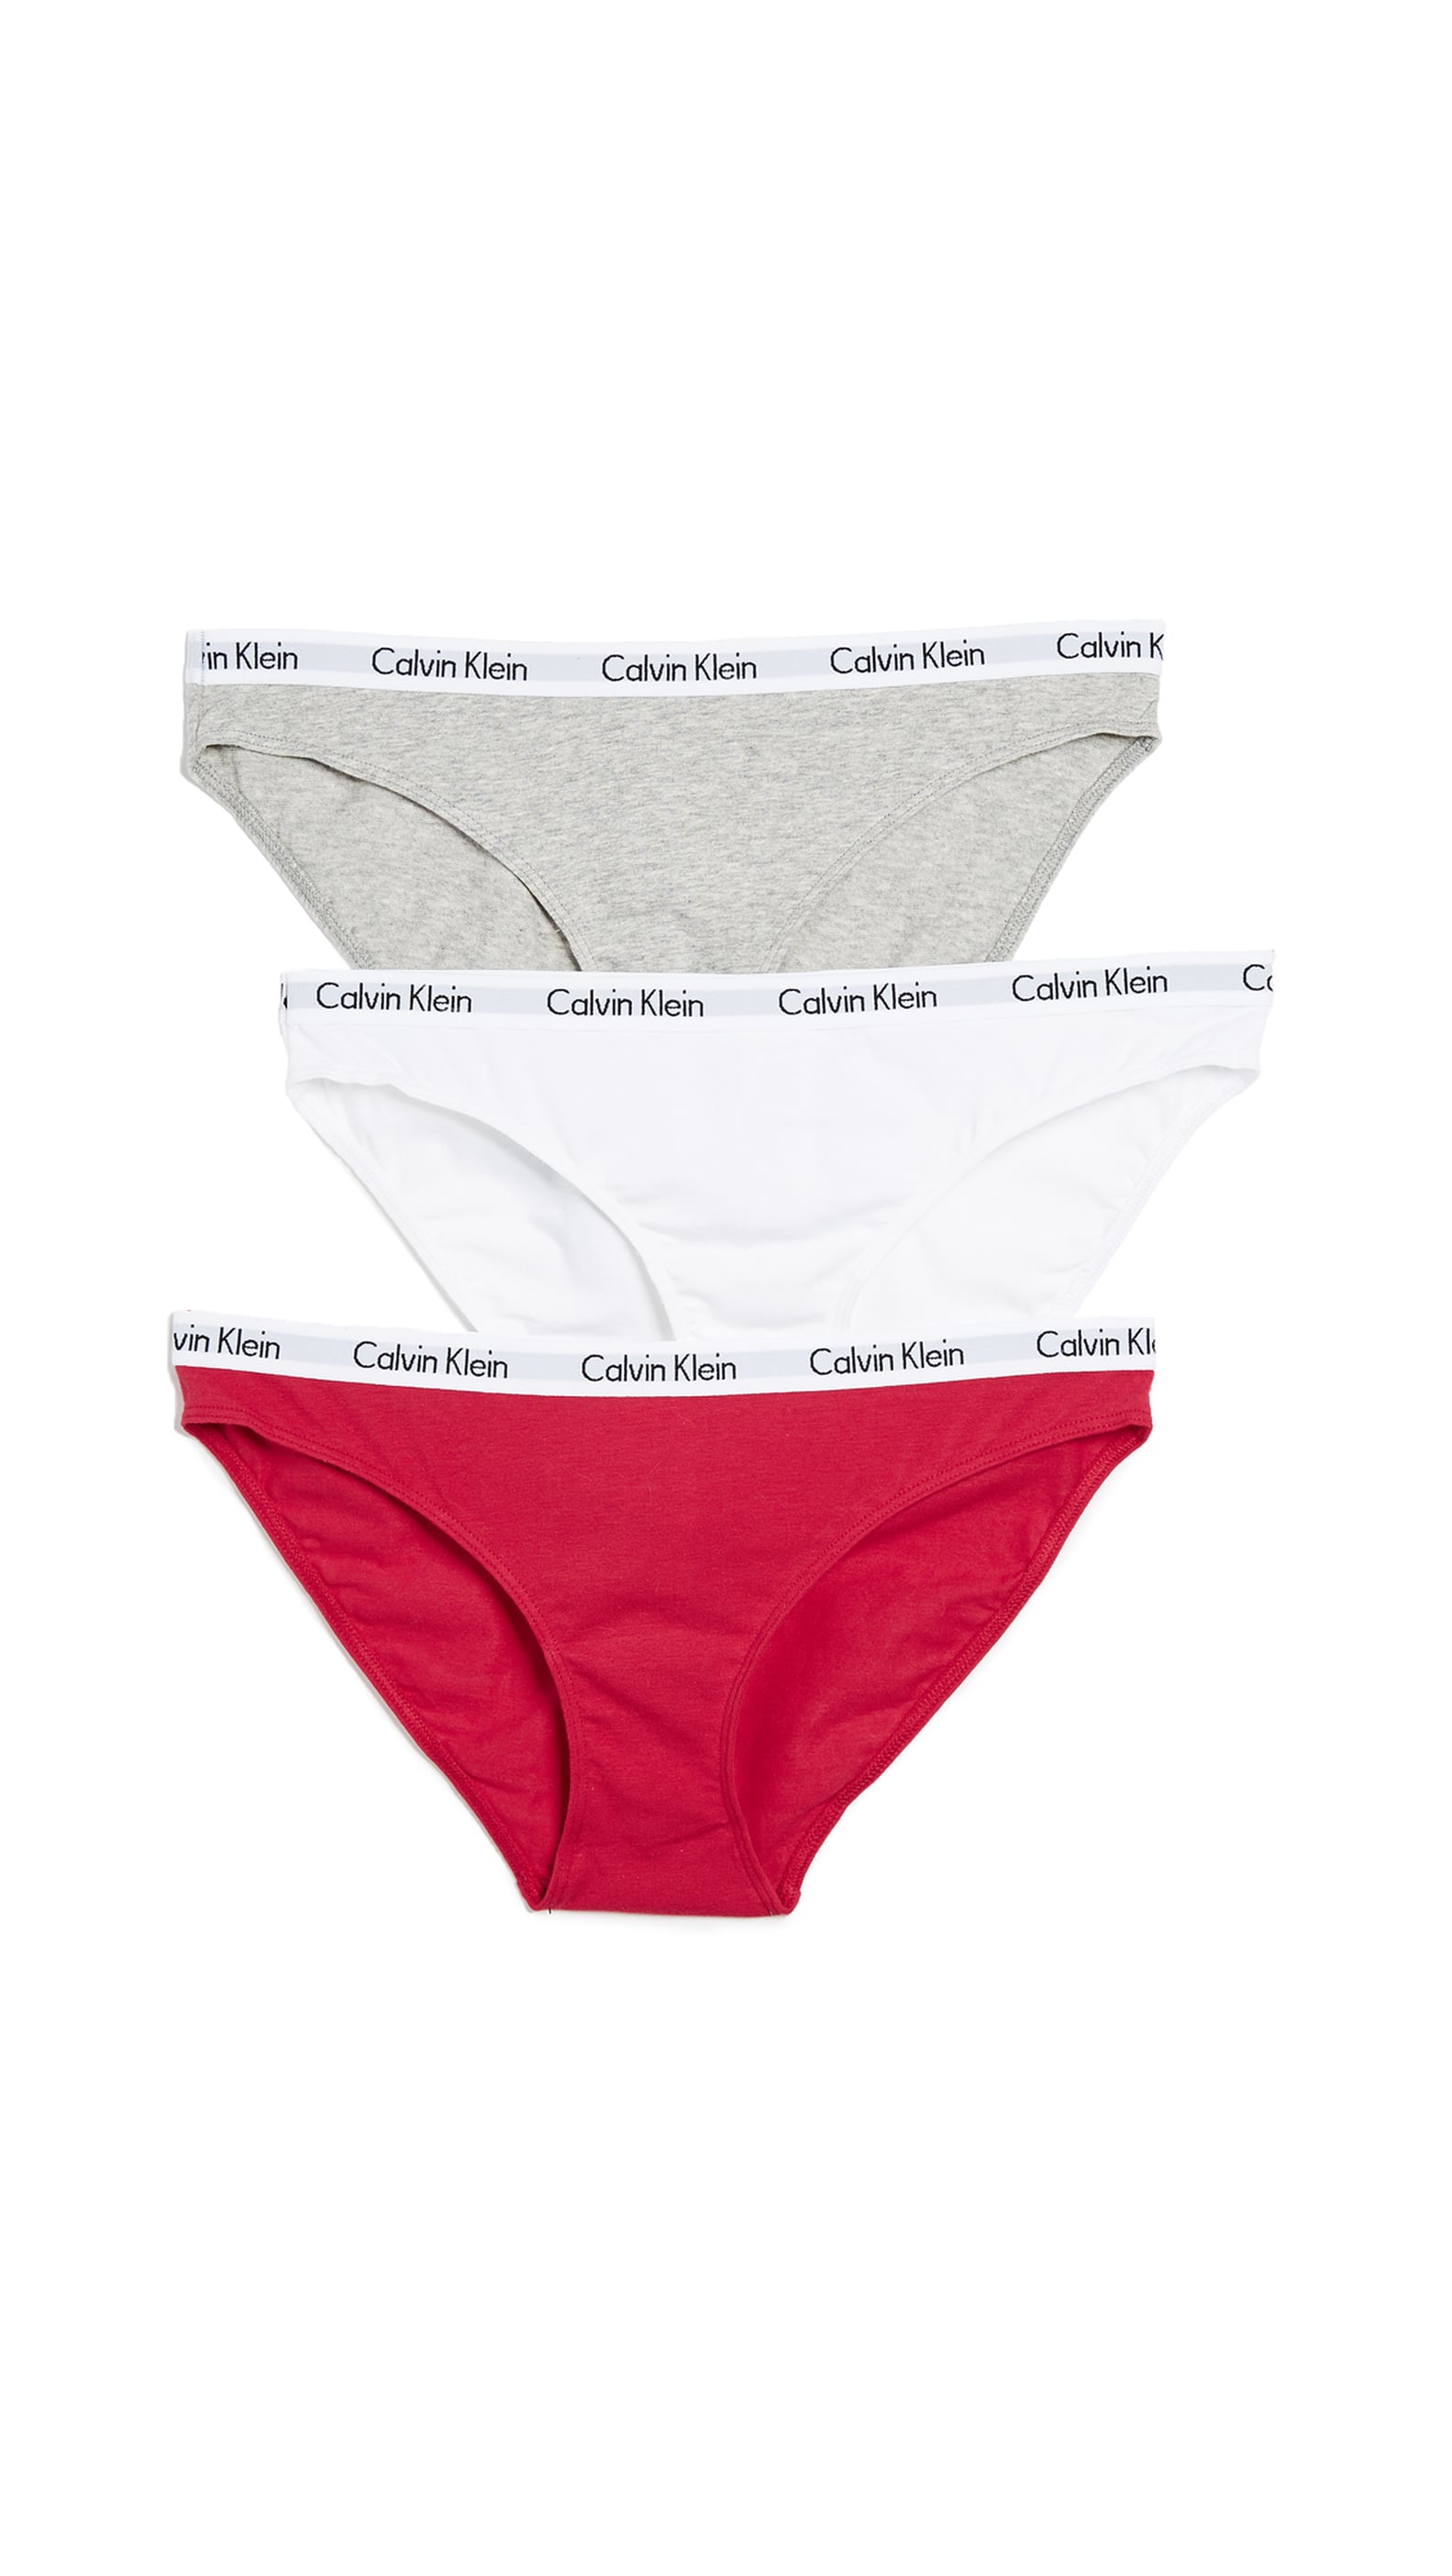 Underwear Gift Sets | POPSUGAR Fashion